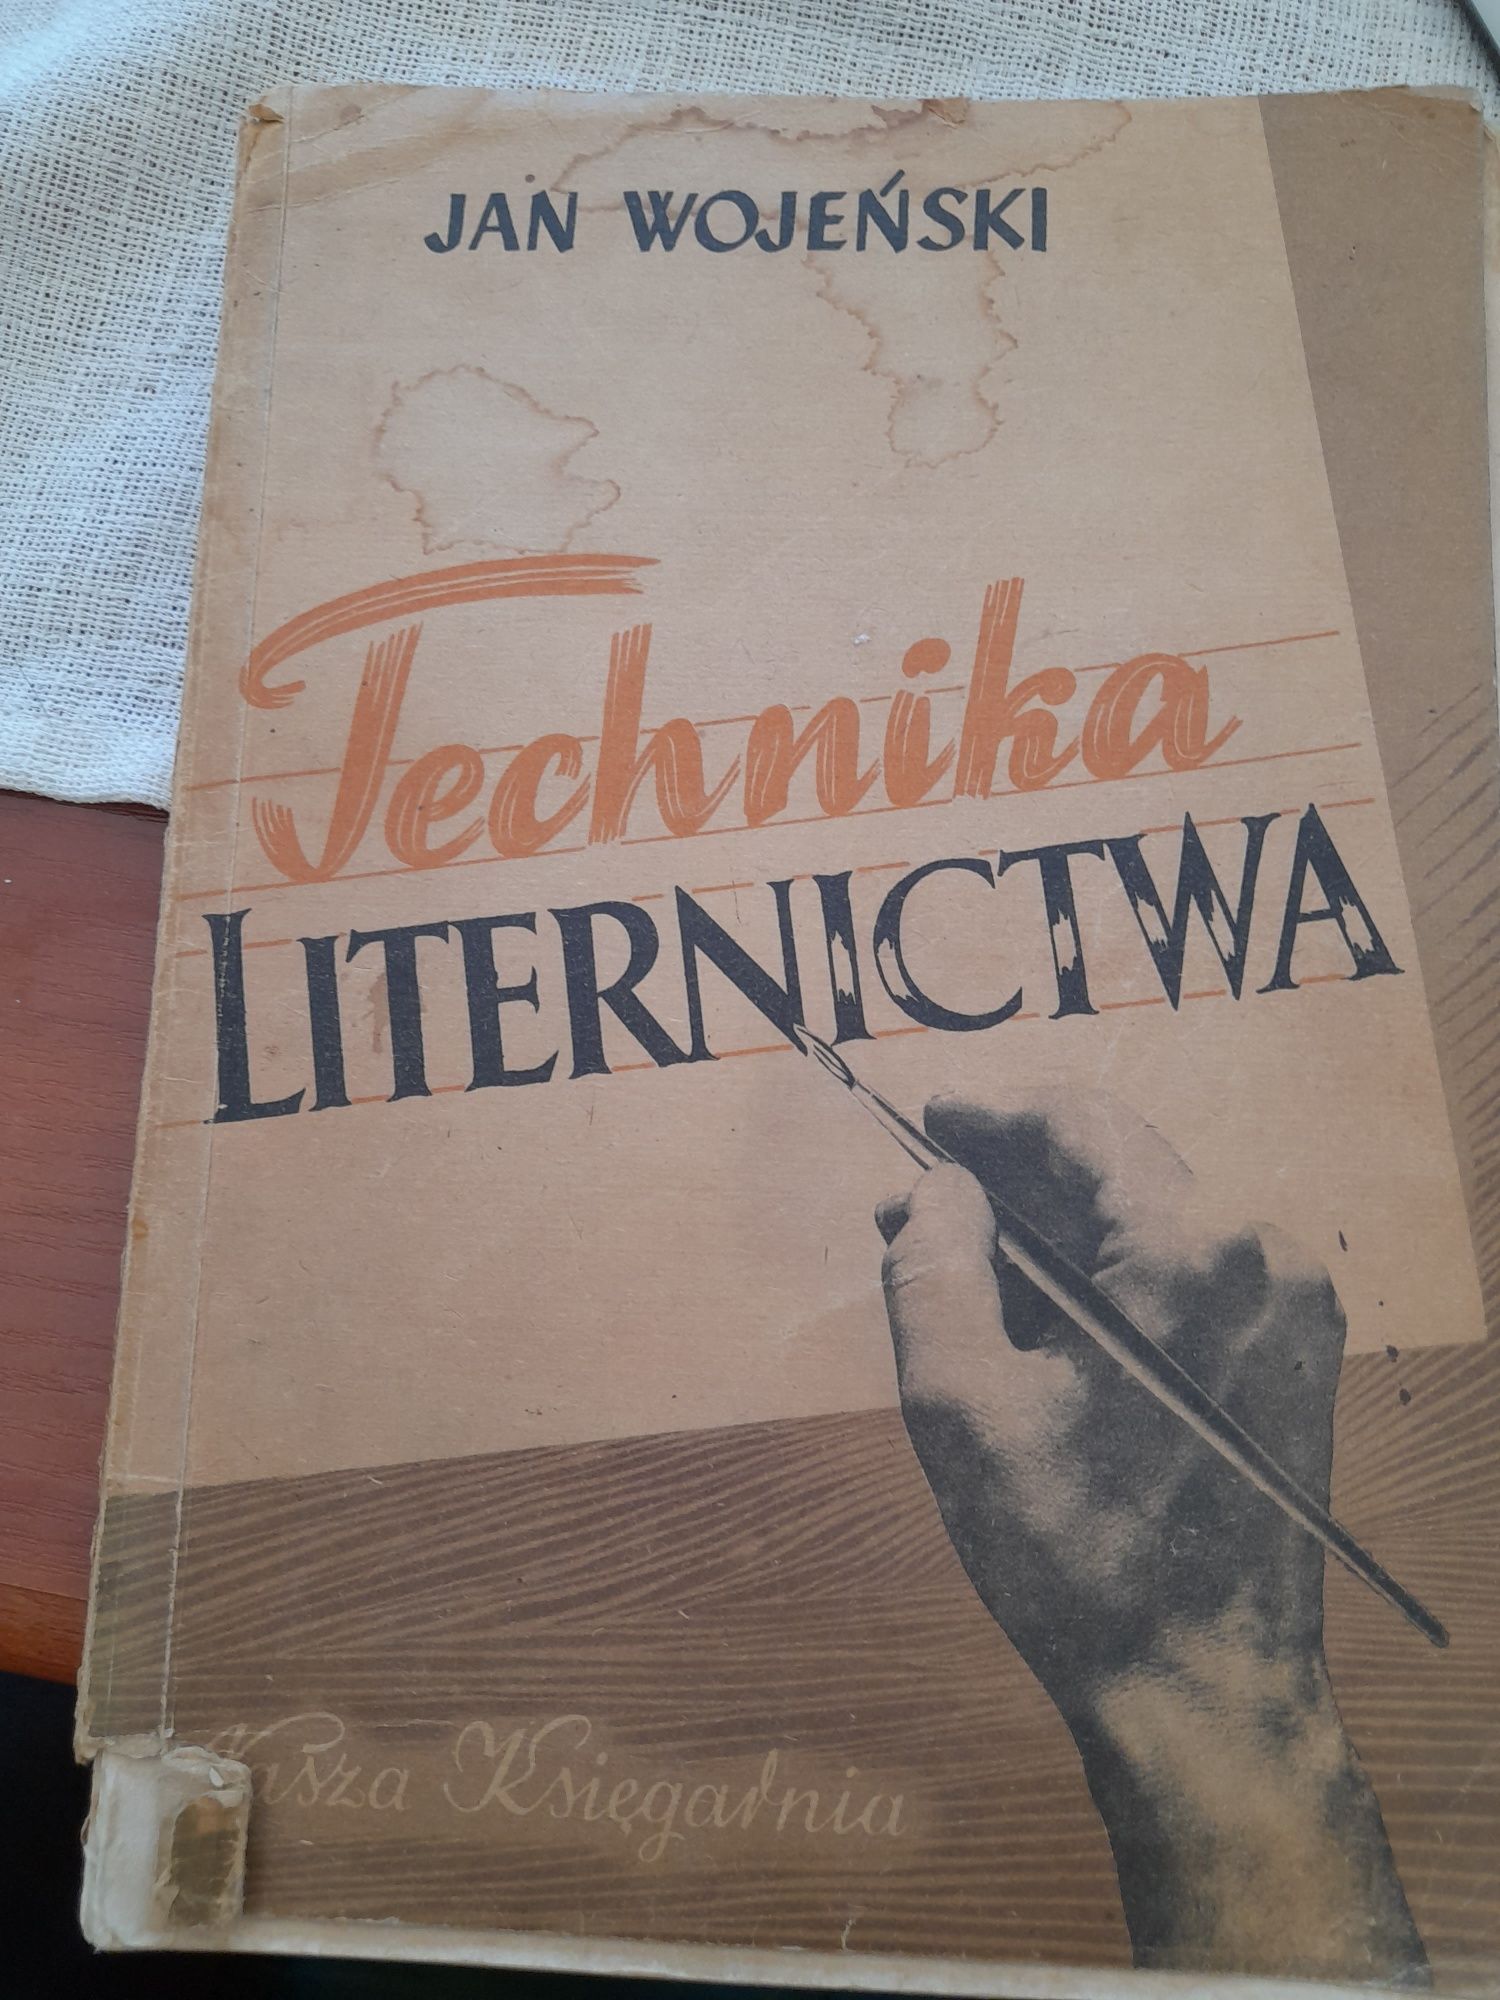 Technika liternictwa, Jan Wojeński